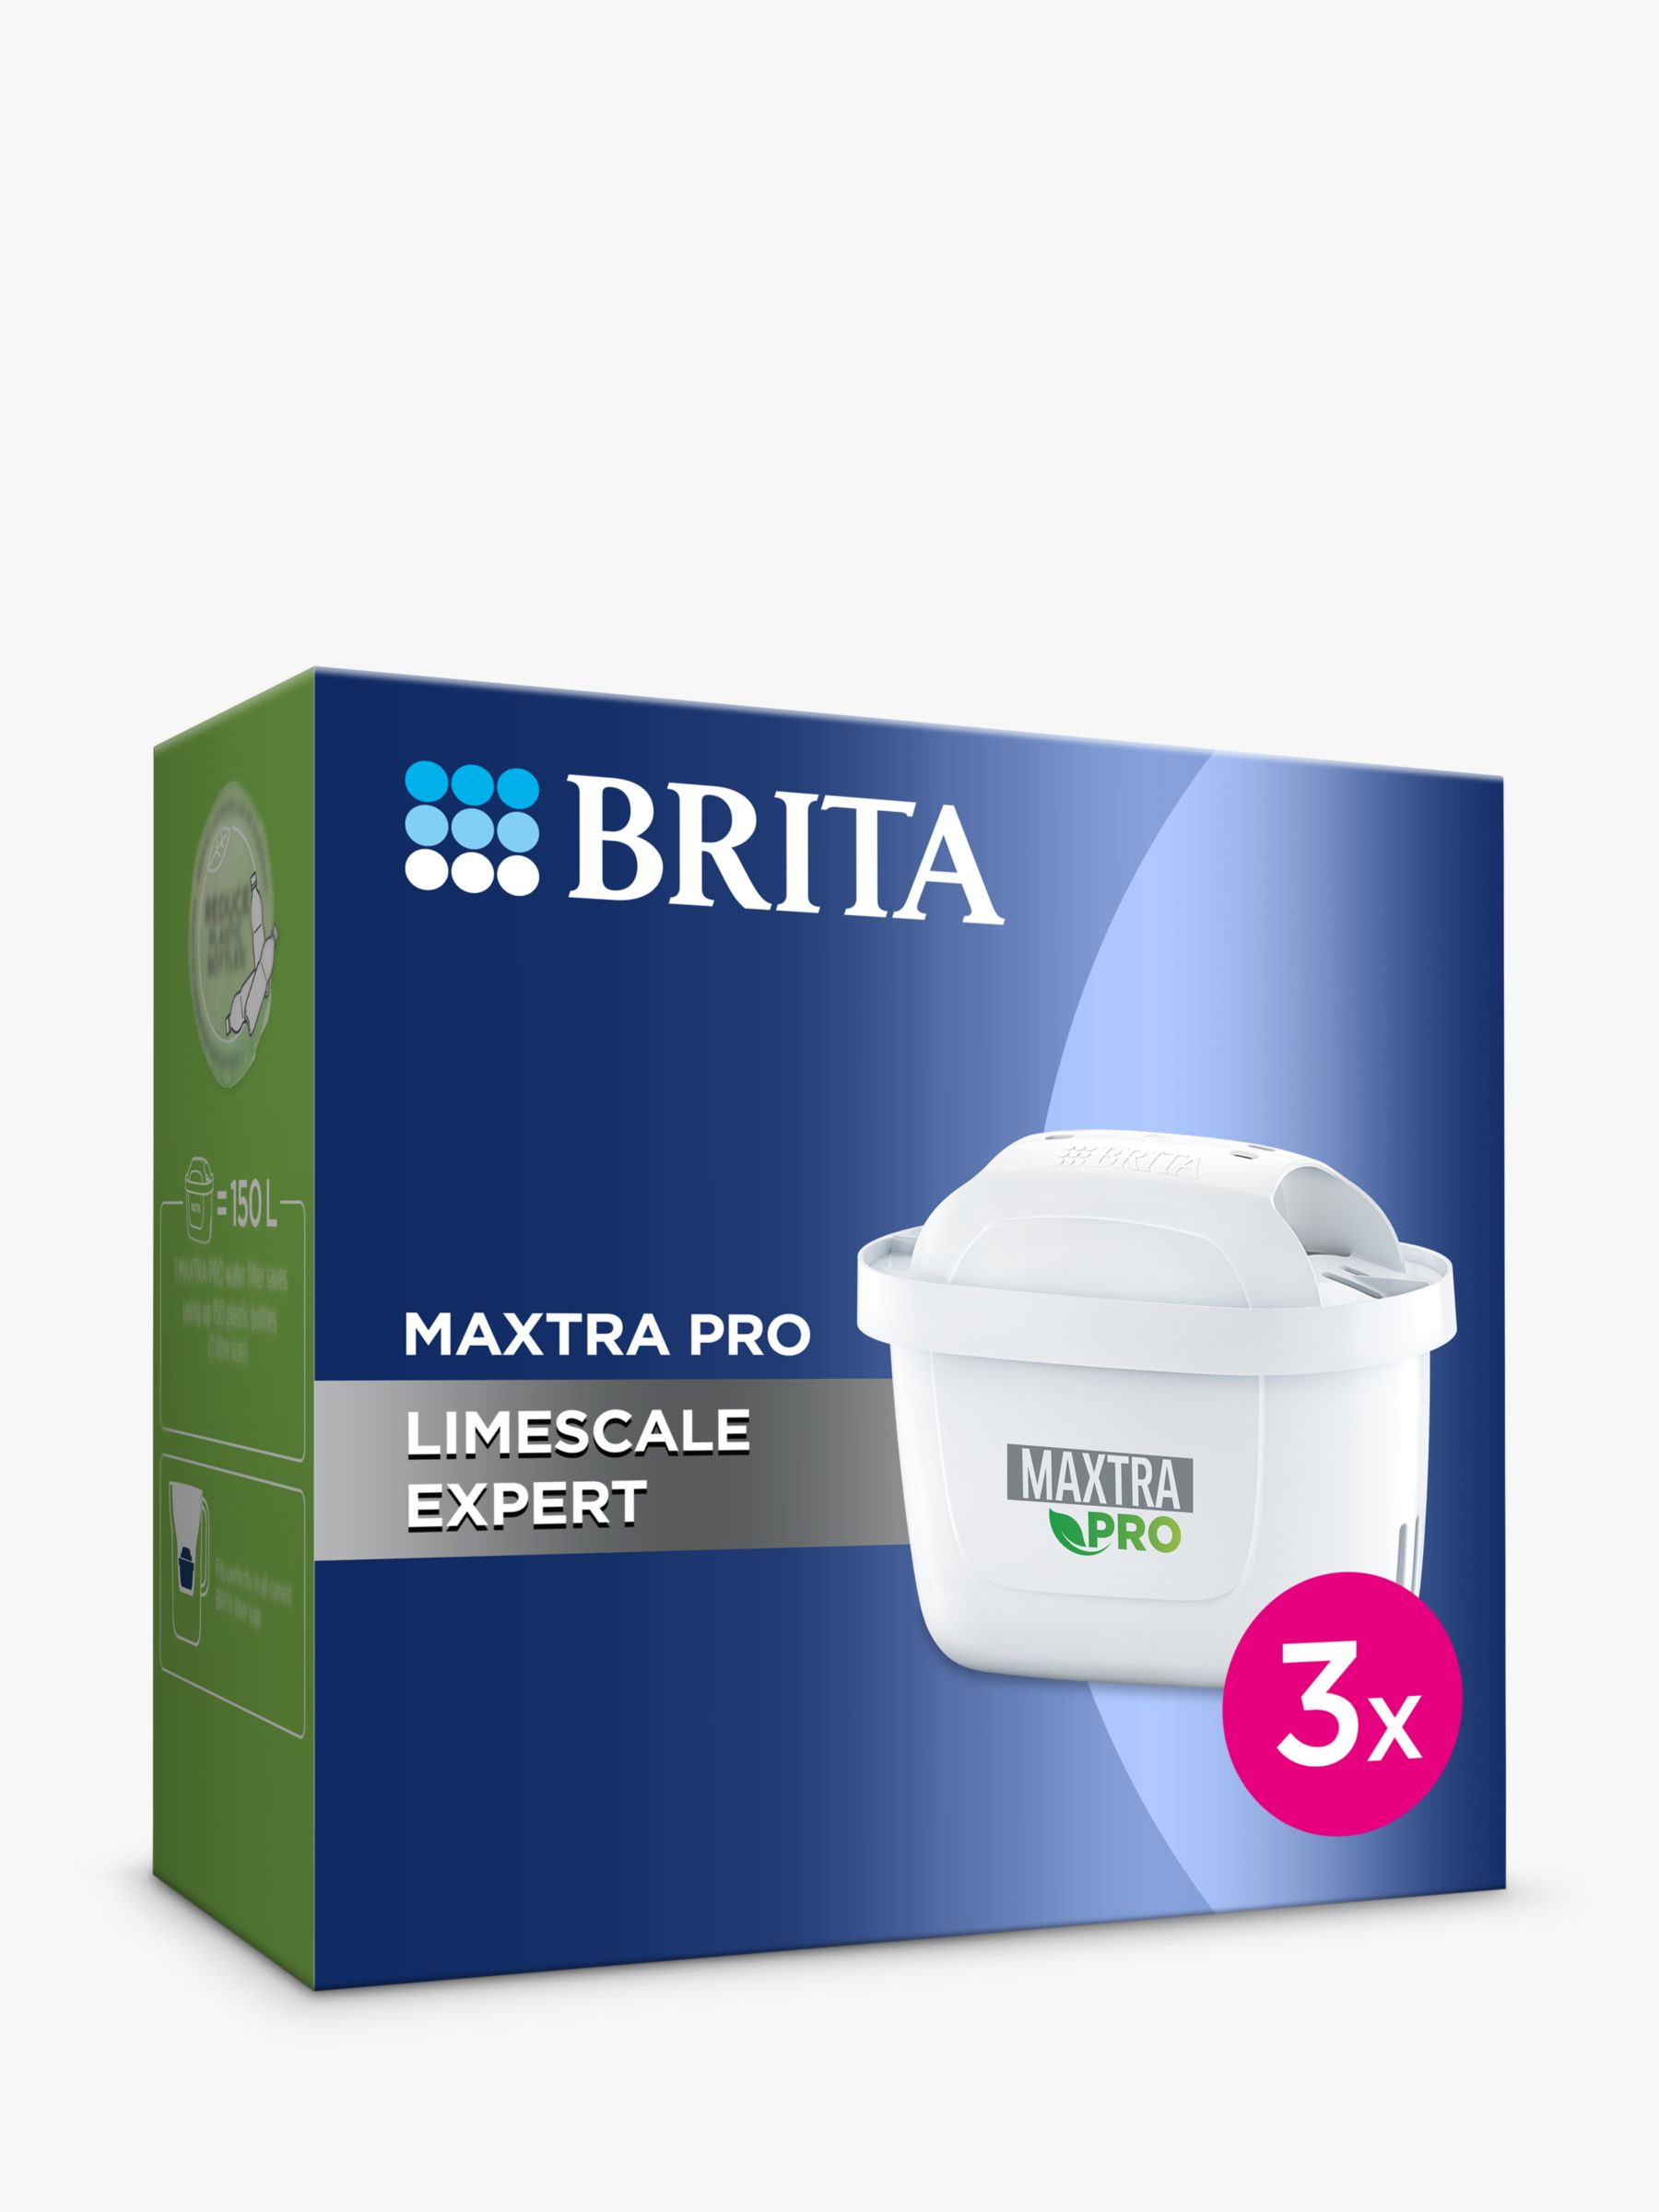 Buy Blue style filter jug + 1 maxtra pro filter 1 unit Brita